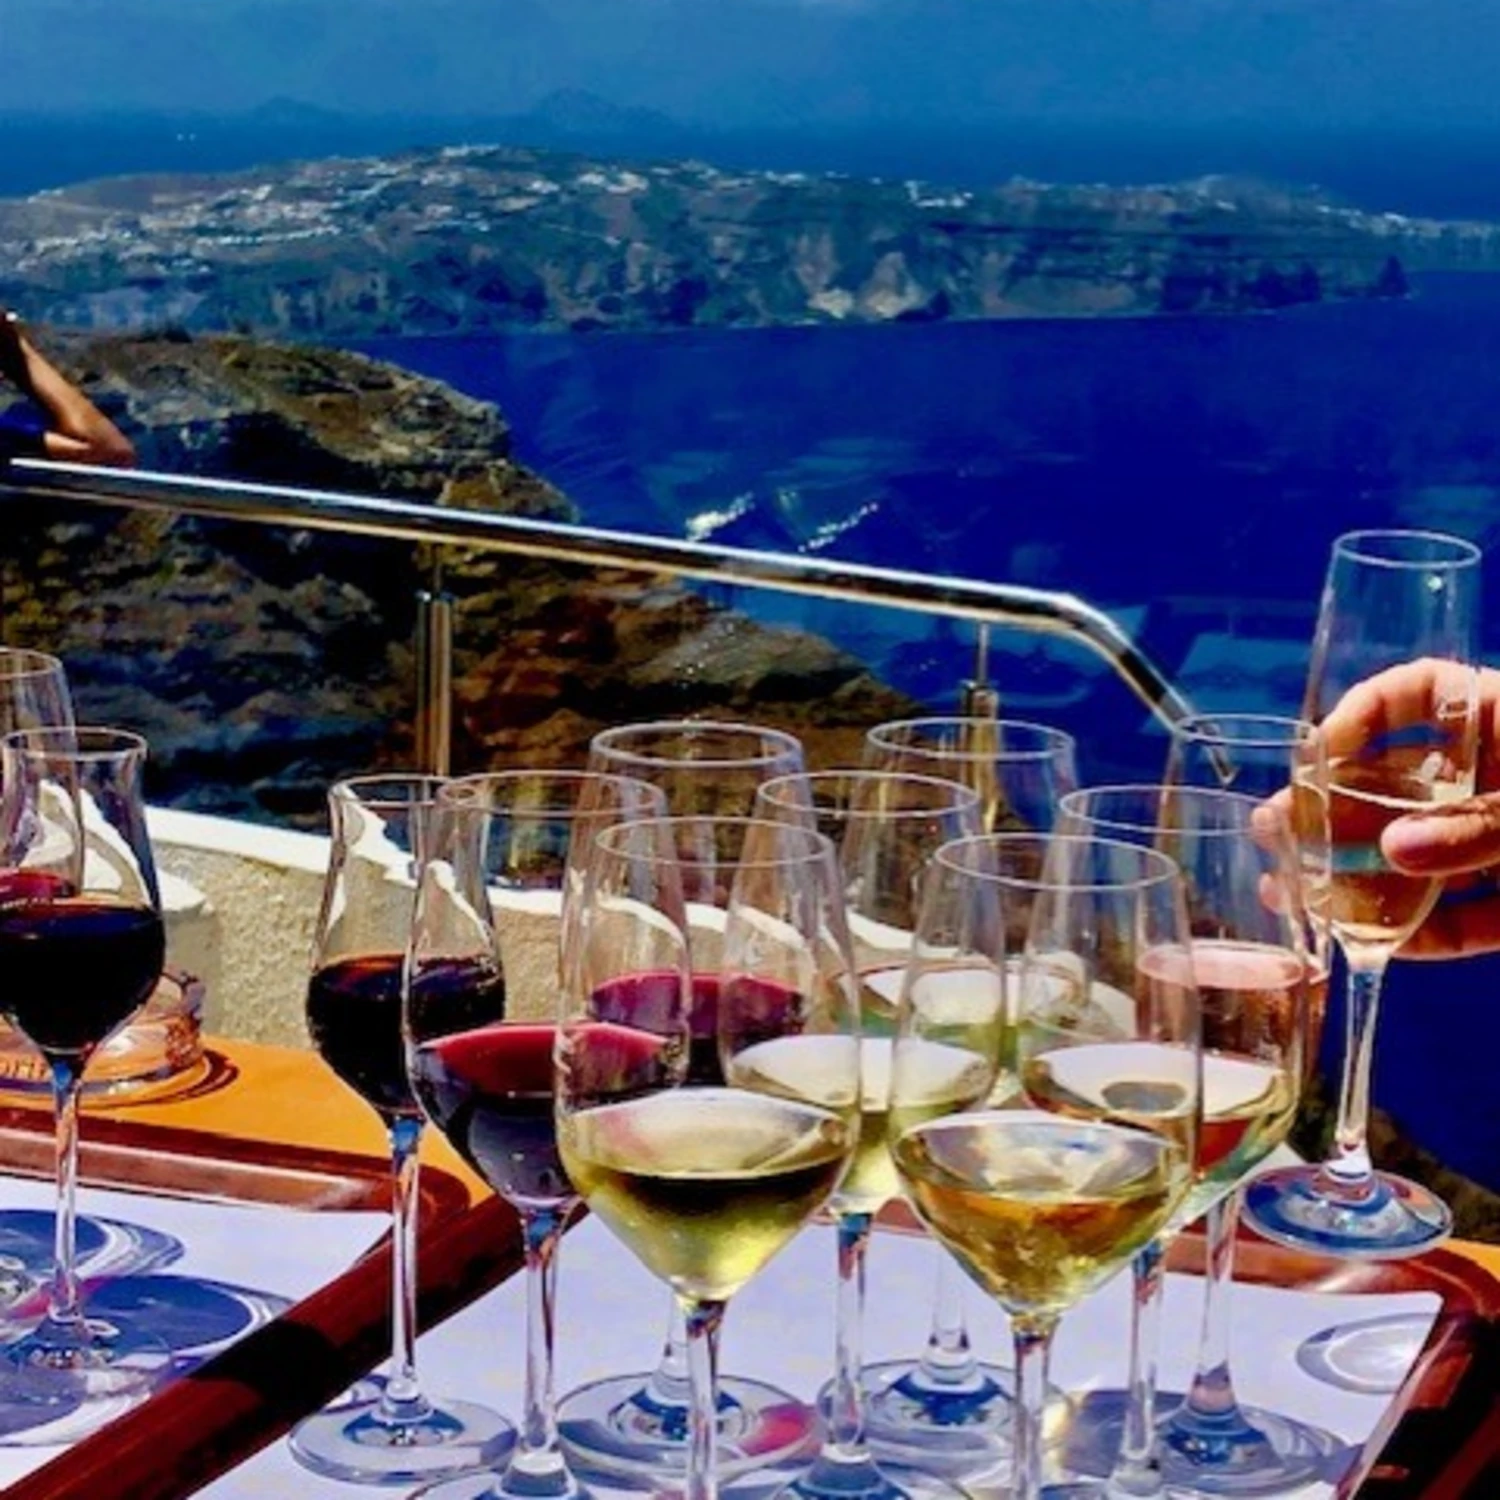 Greek wine view at seaside